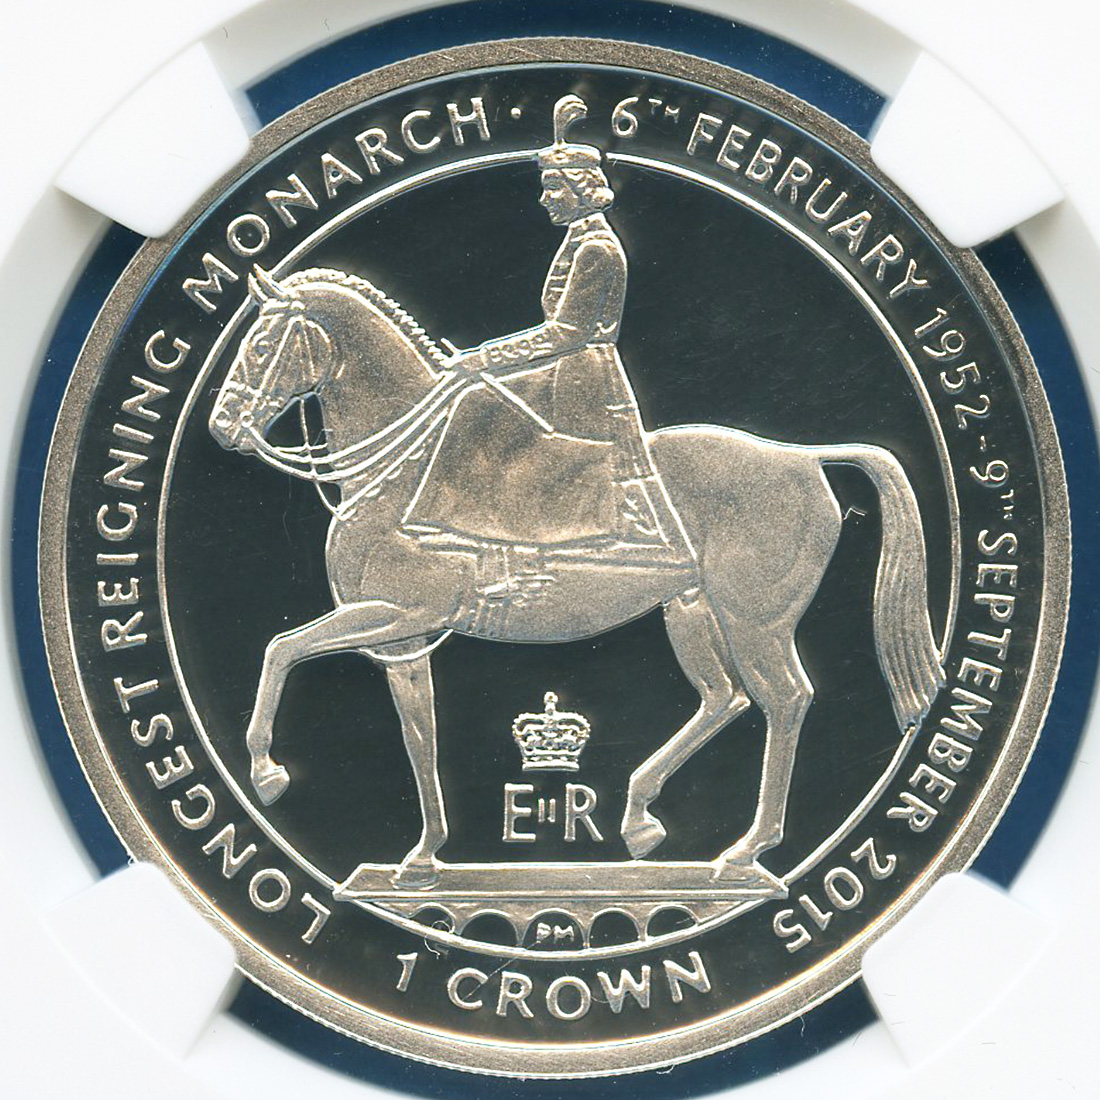 2015 マン島 エリザベス女王在位最長記念プルーフ銀貨  NGC PF70UC